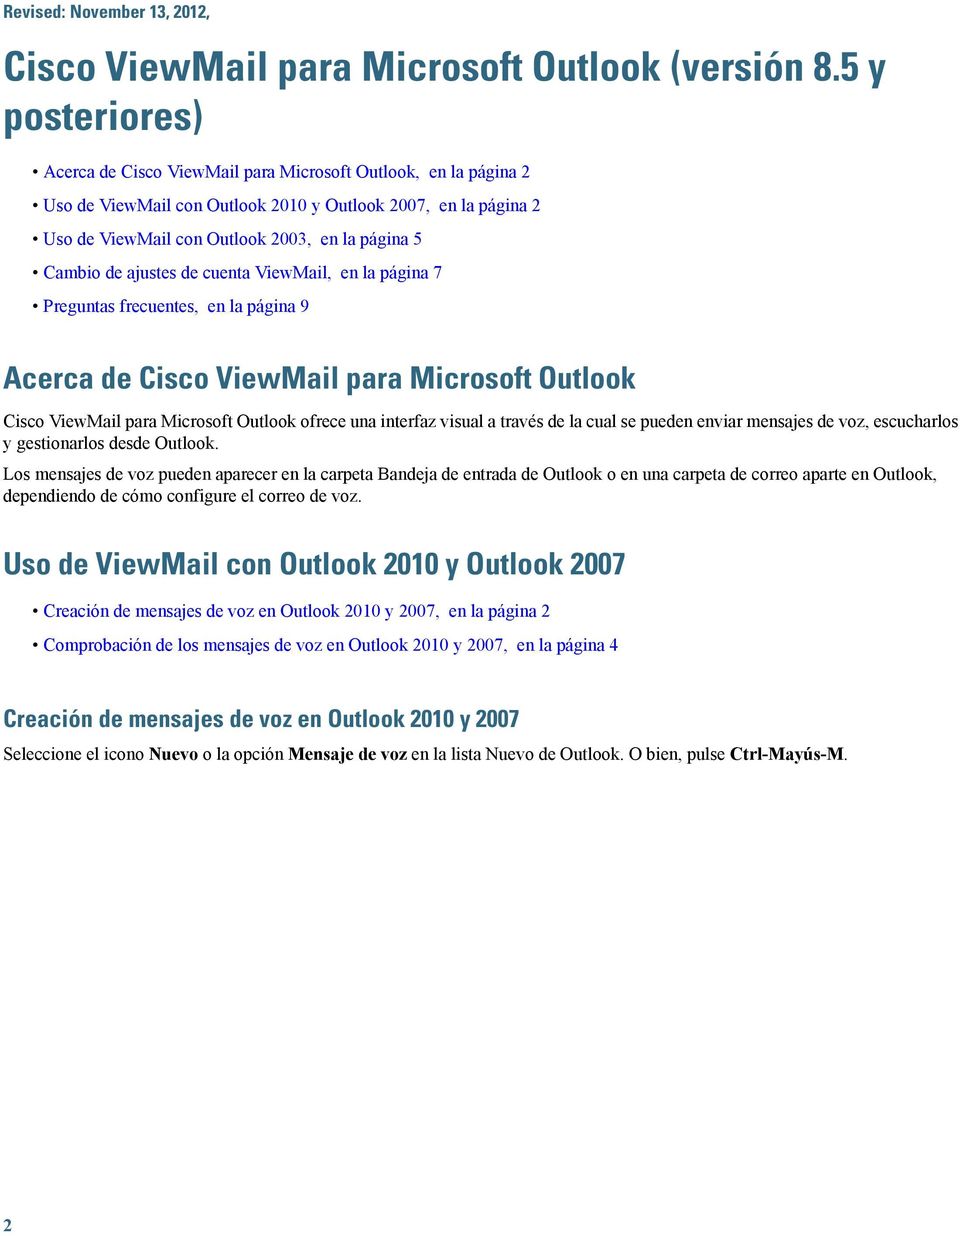 de cuenta ViewMail, en la página 7 Preguntas frecuentes, en la página 9 Acerca de Cisco ViewMail para Microsoft Outlook Cisco ViewMail para Microsoft Outlook ofrece una interfaz visual a través de la